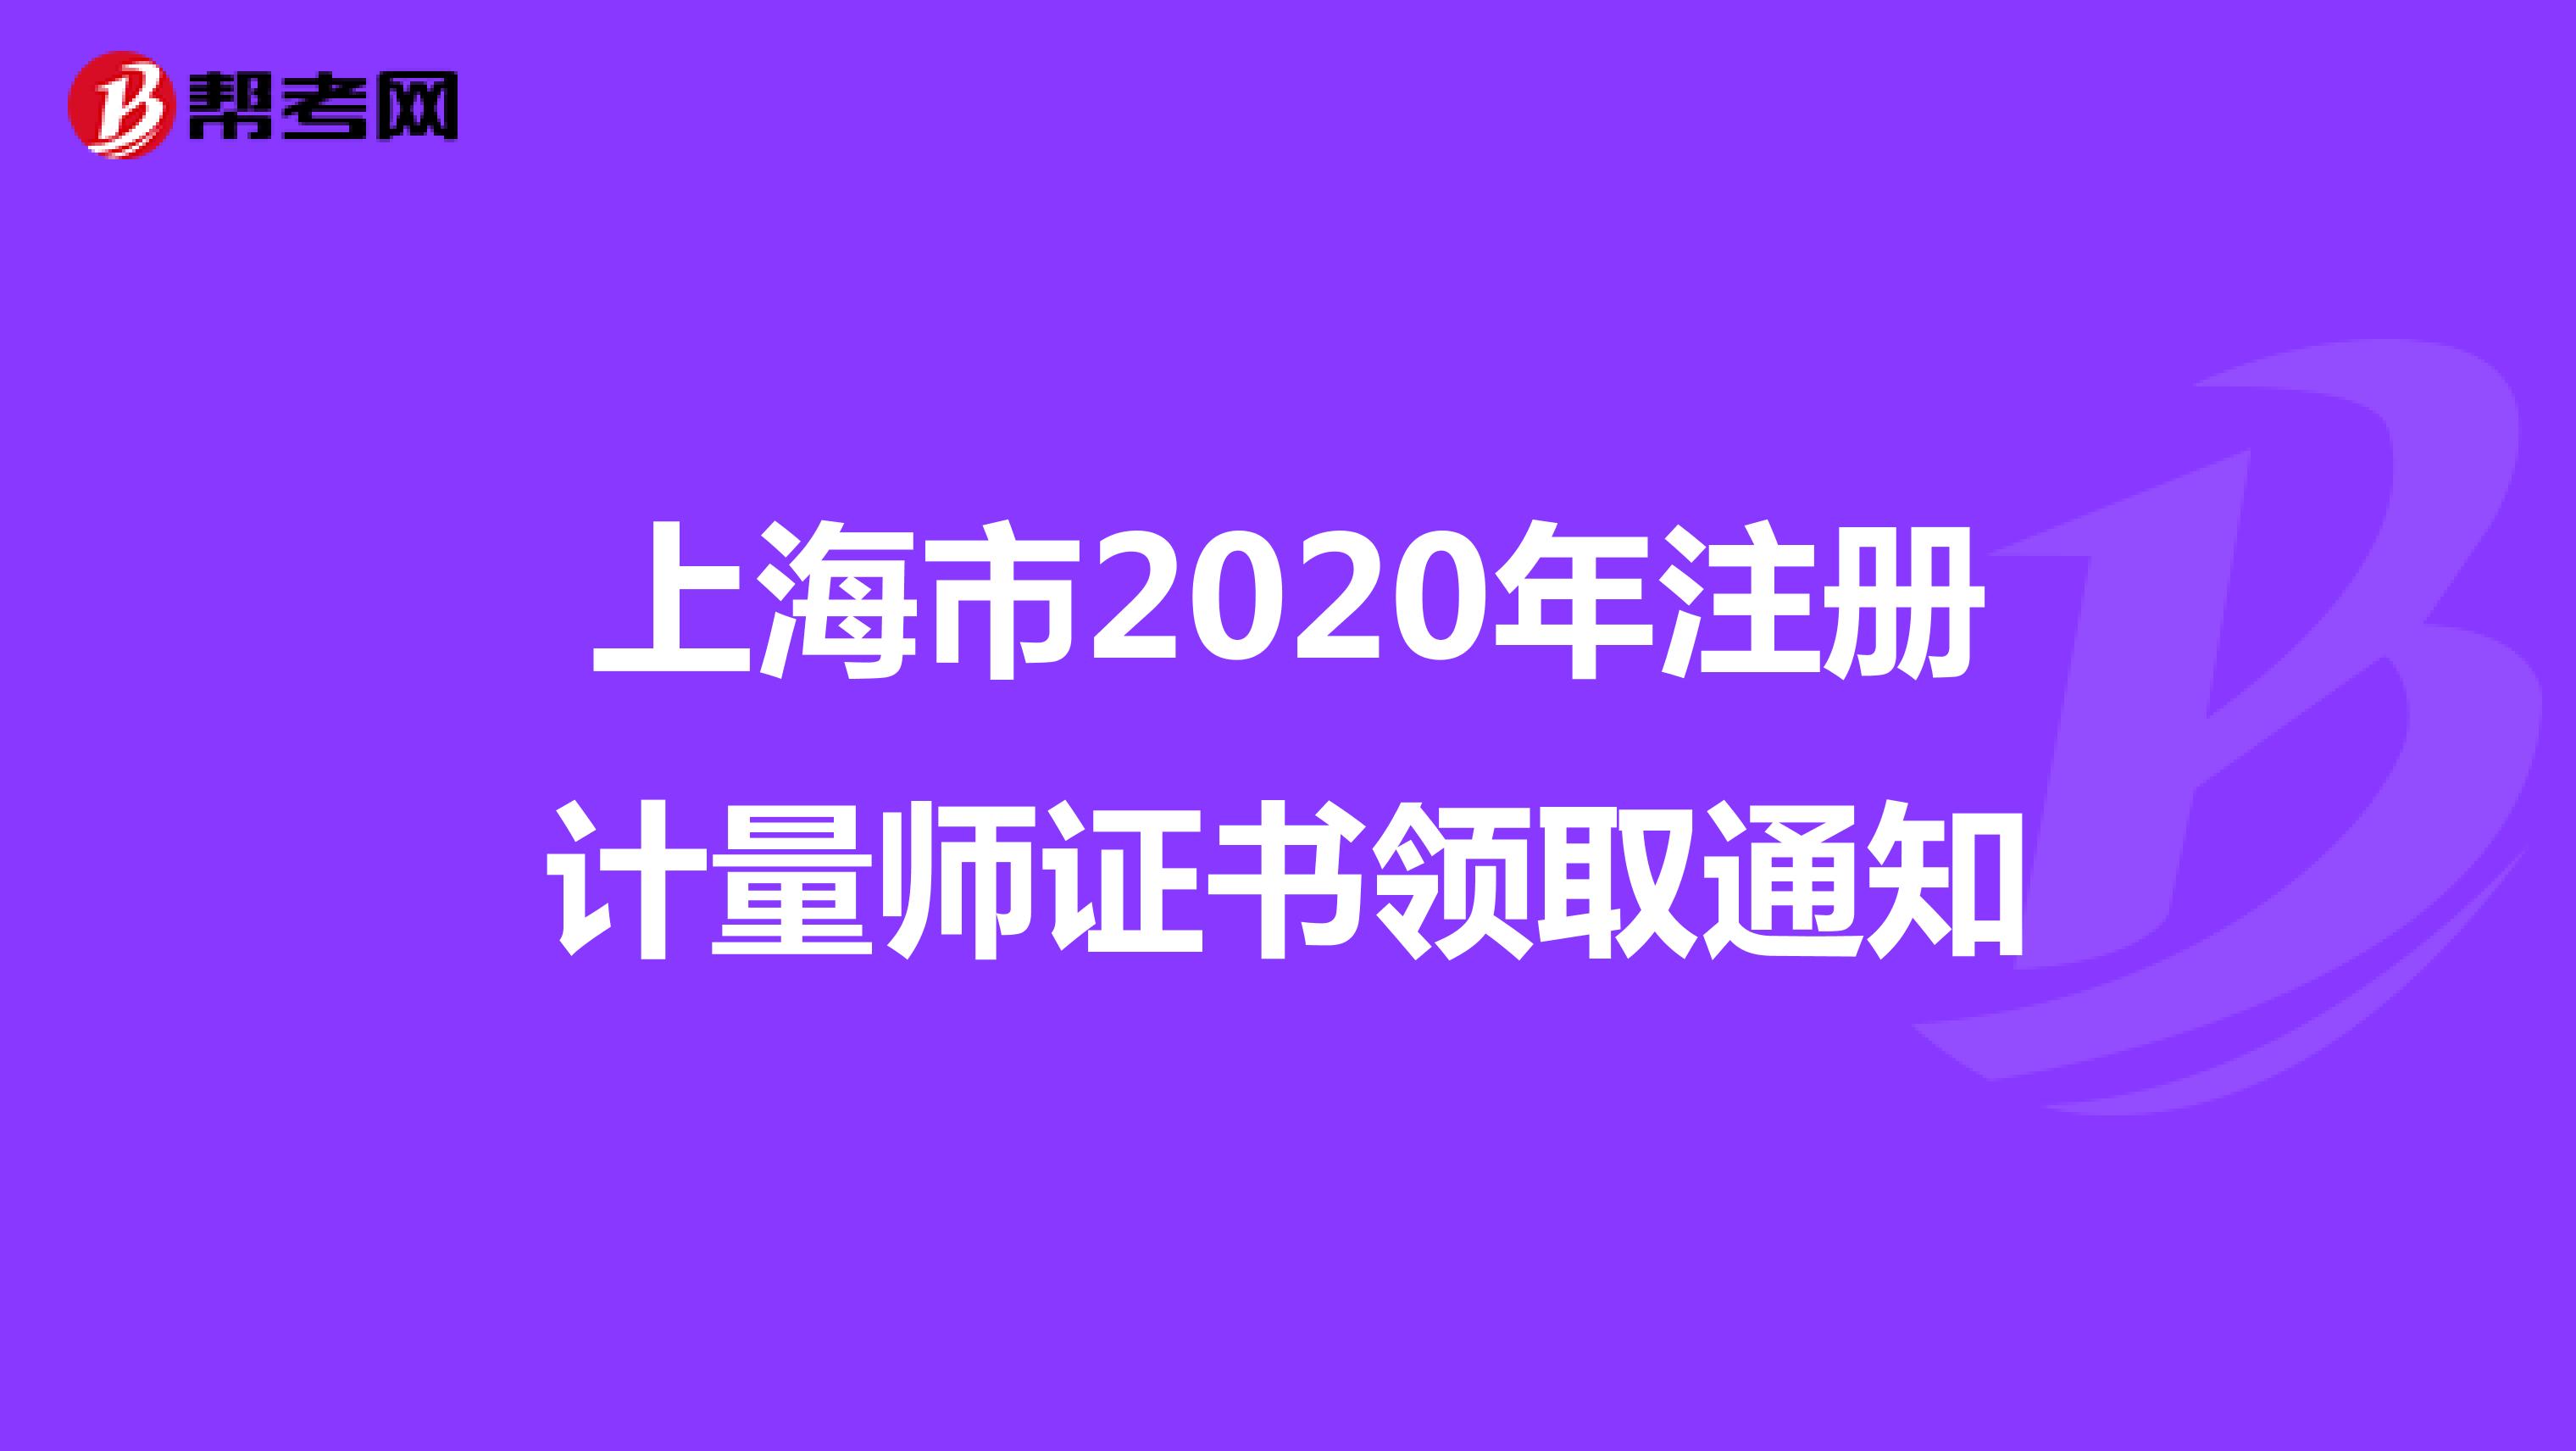 上海市2020年注册计量师证书领取通知